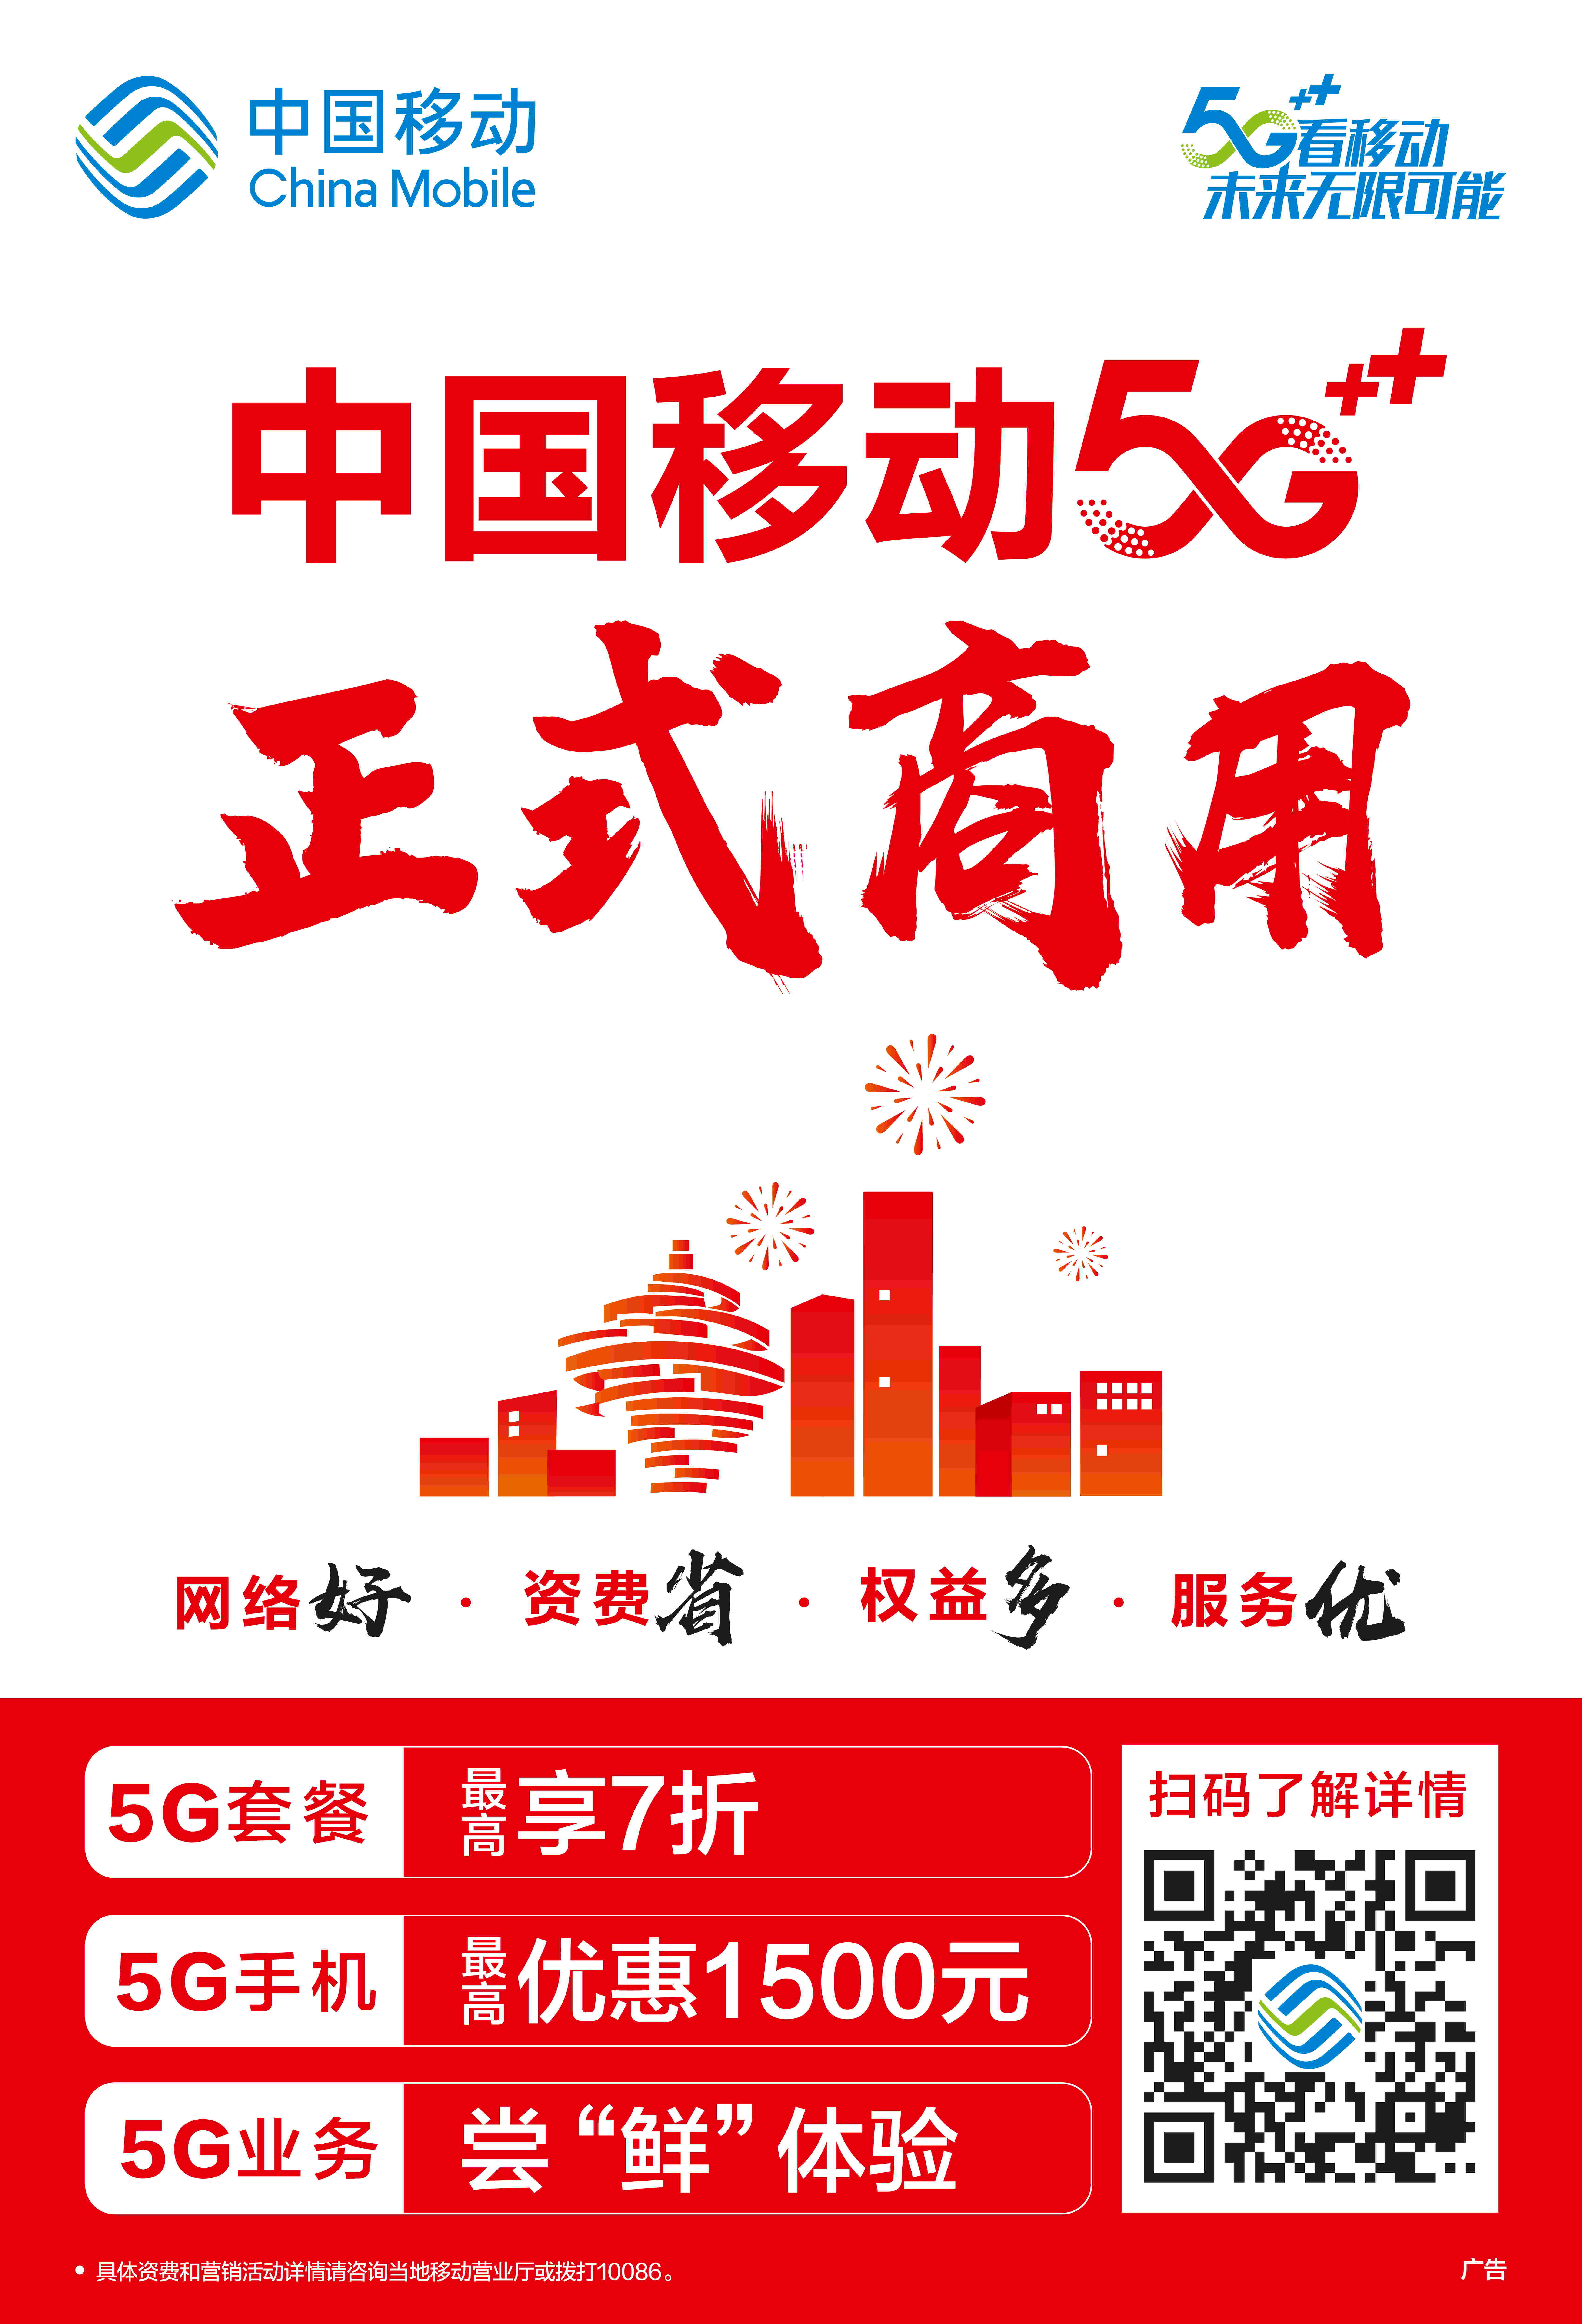 中国发放 5G 商用许可证，开启全新发展纪元，5G 速度惊人，未来充满无限可能  第3张